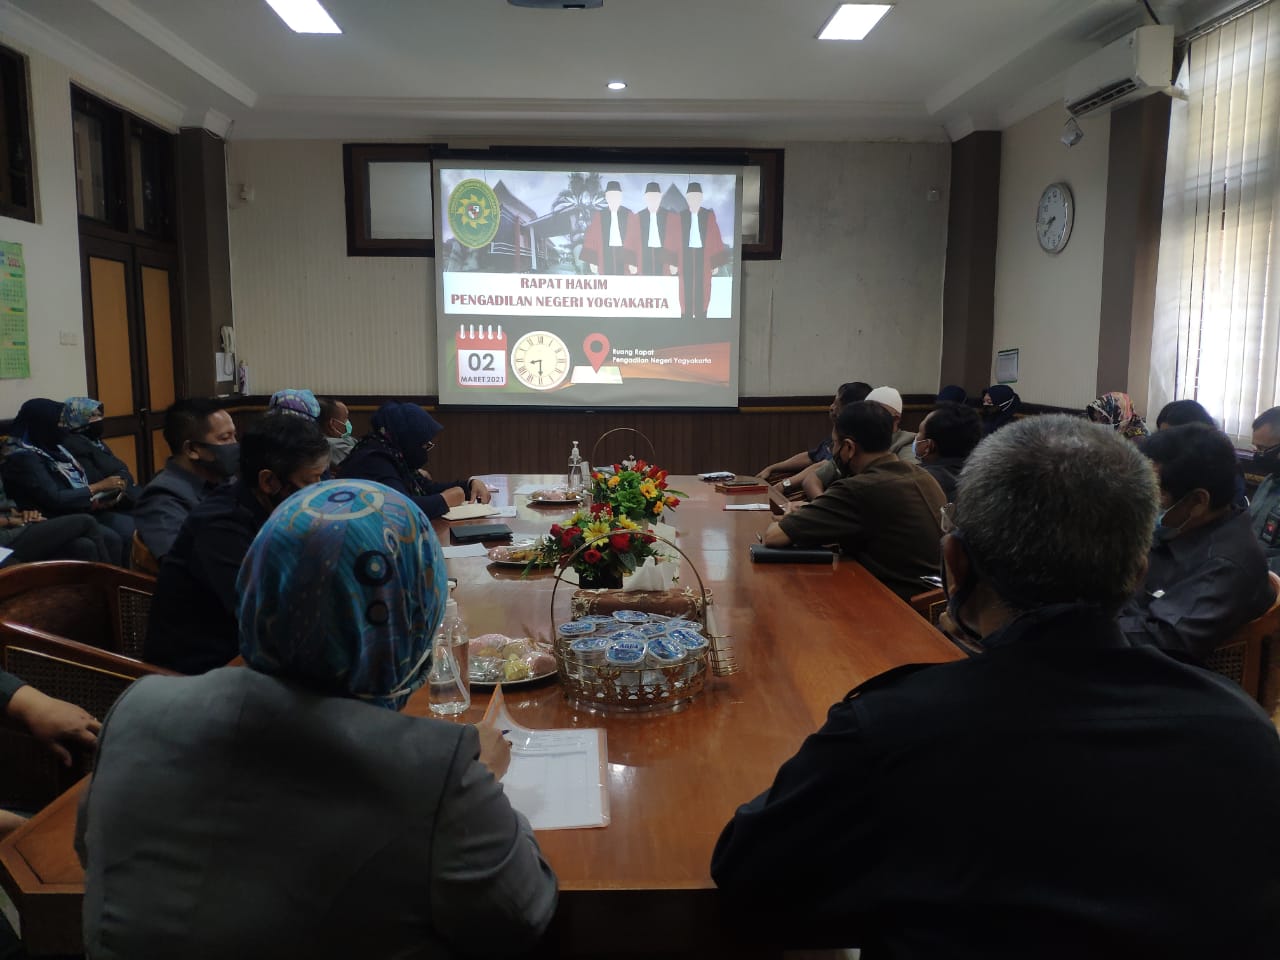 Rapat Hakim tentang Persidangan Elektronik di Pengadilan Negeri Yogyakarta